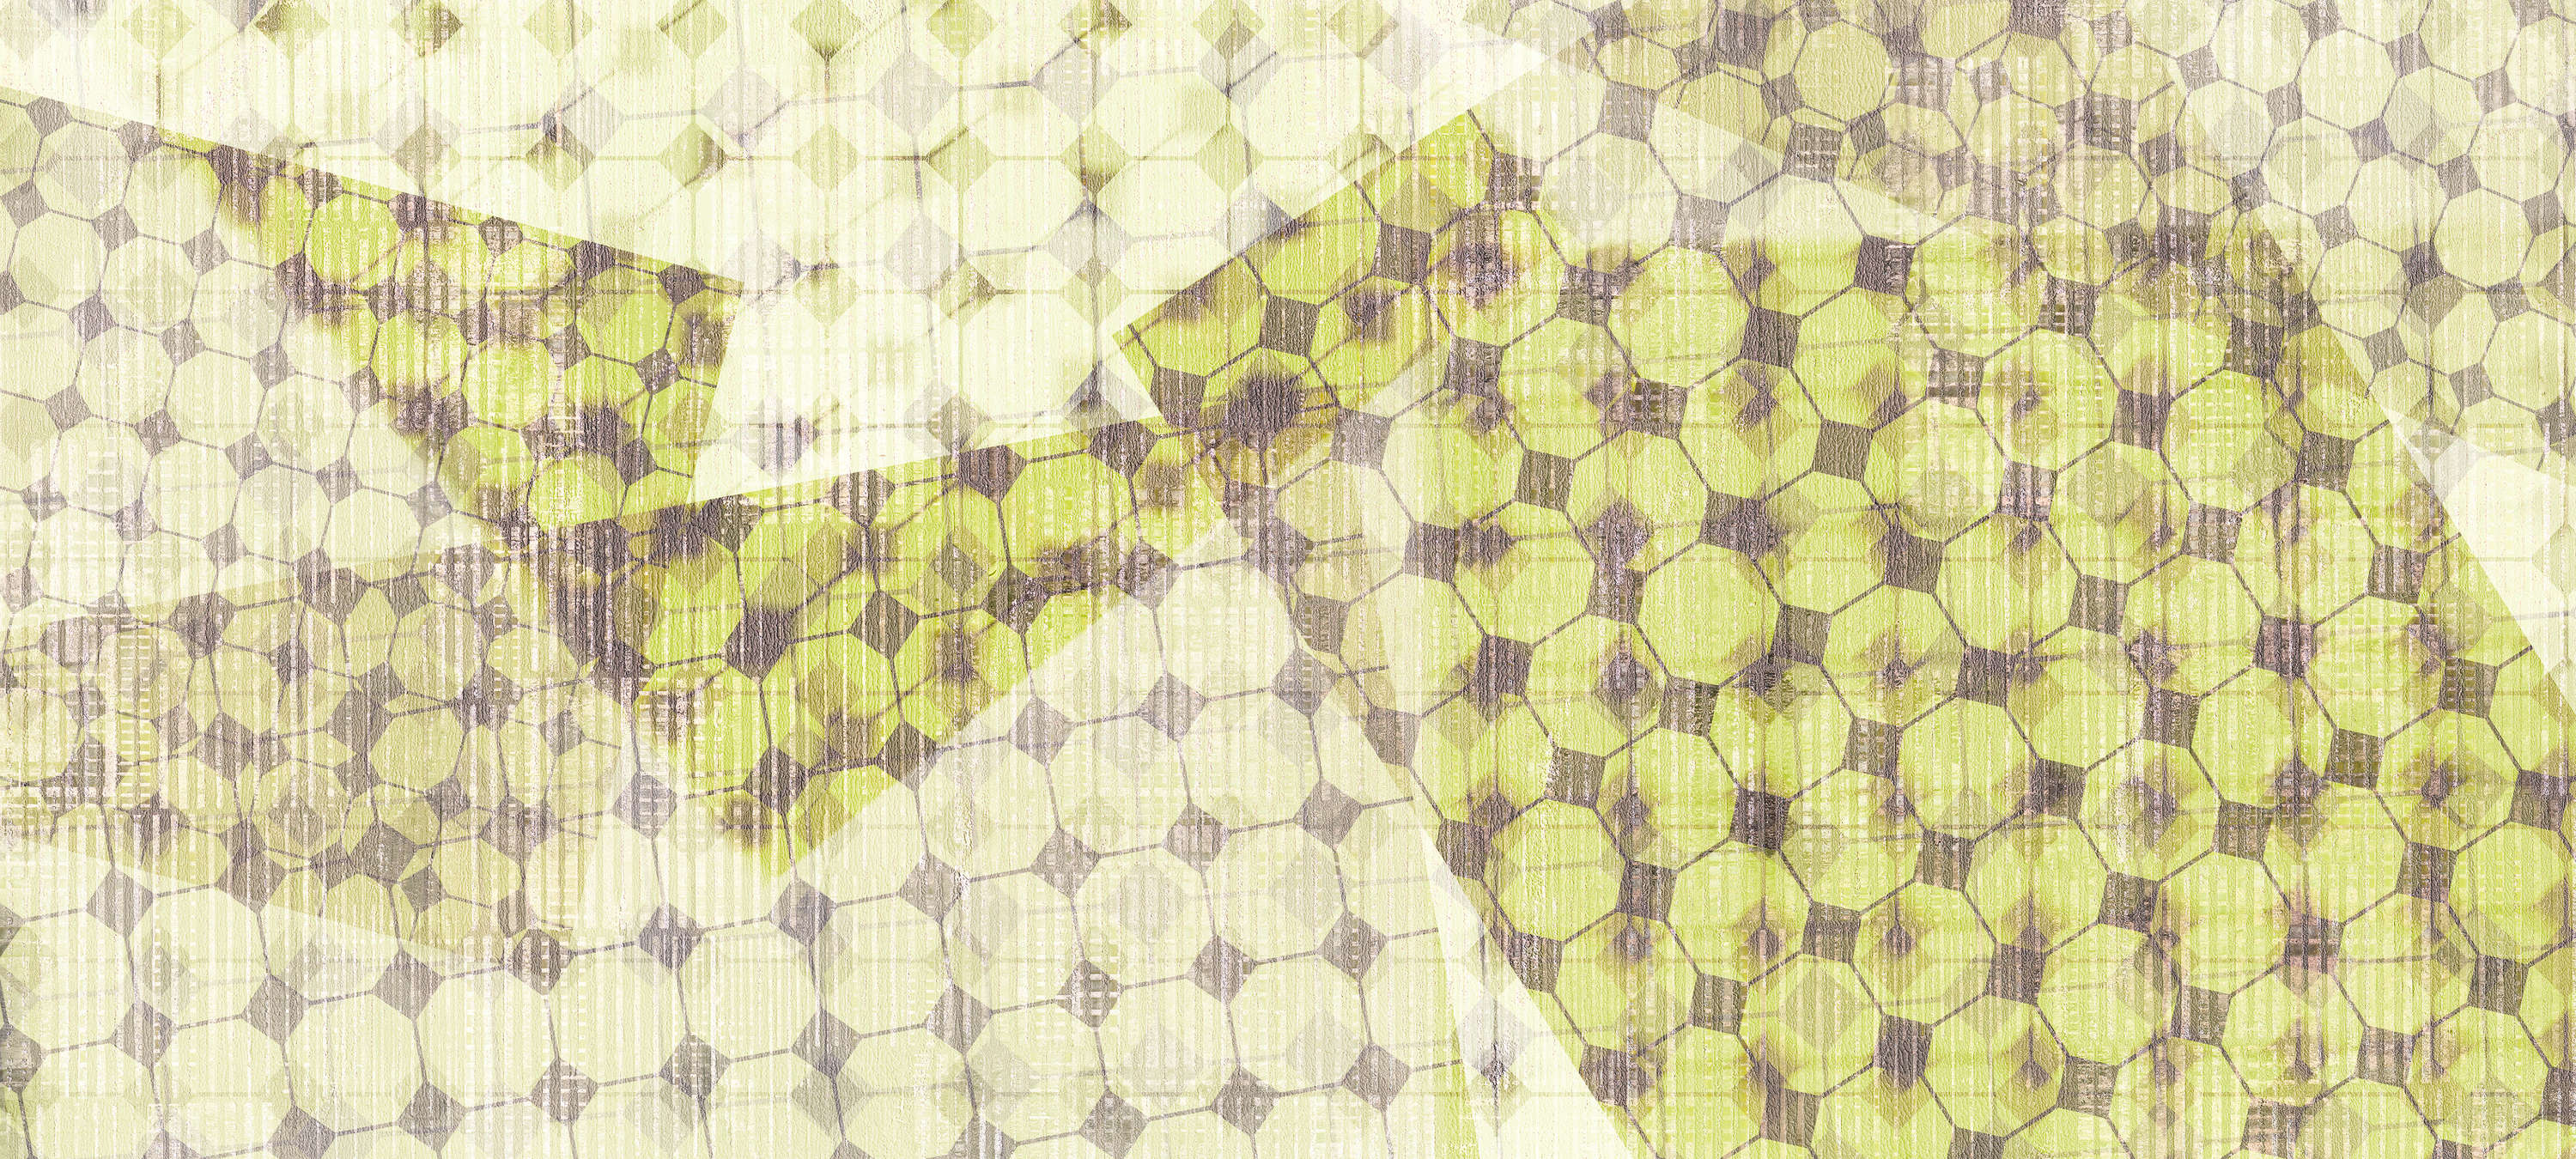             Photo wallpaper geometric pattern & layer effect - green, white, black
        